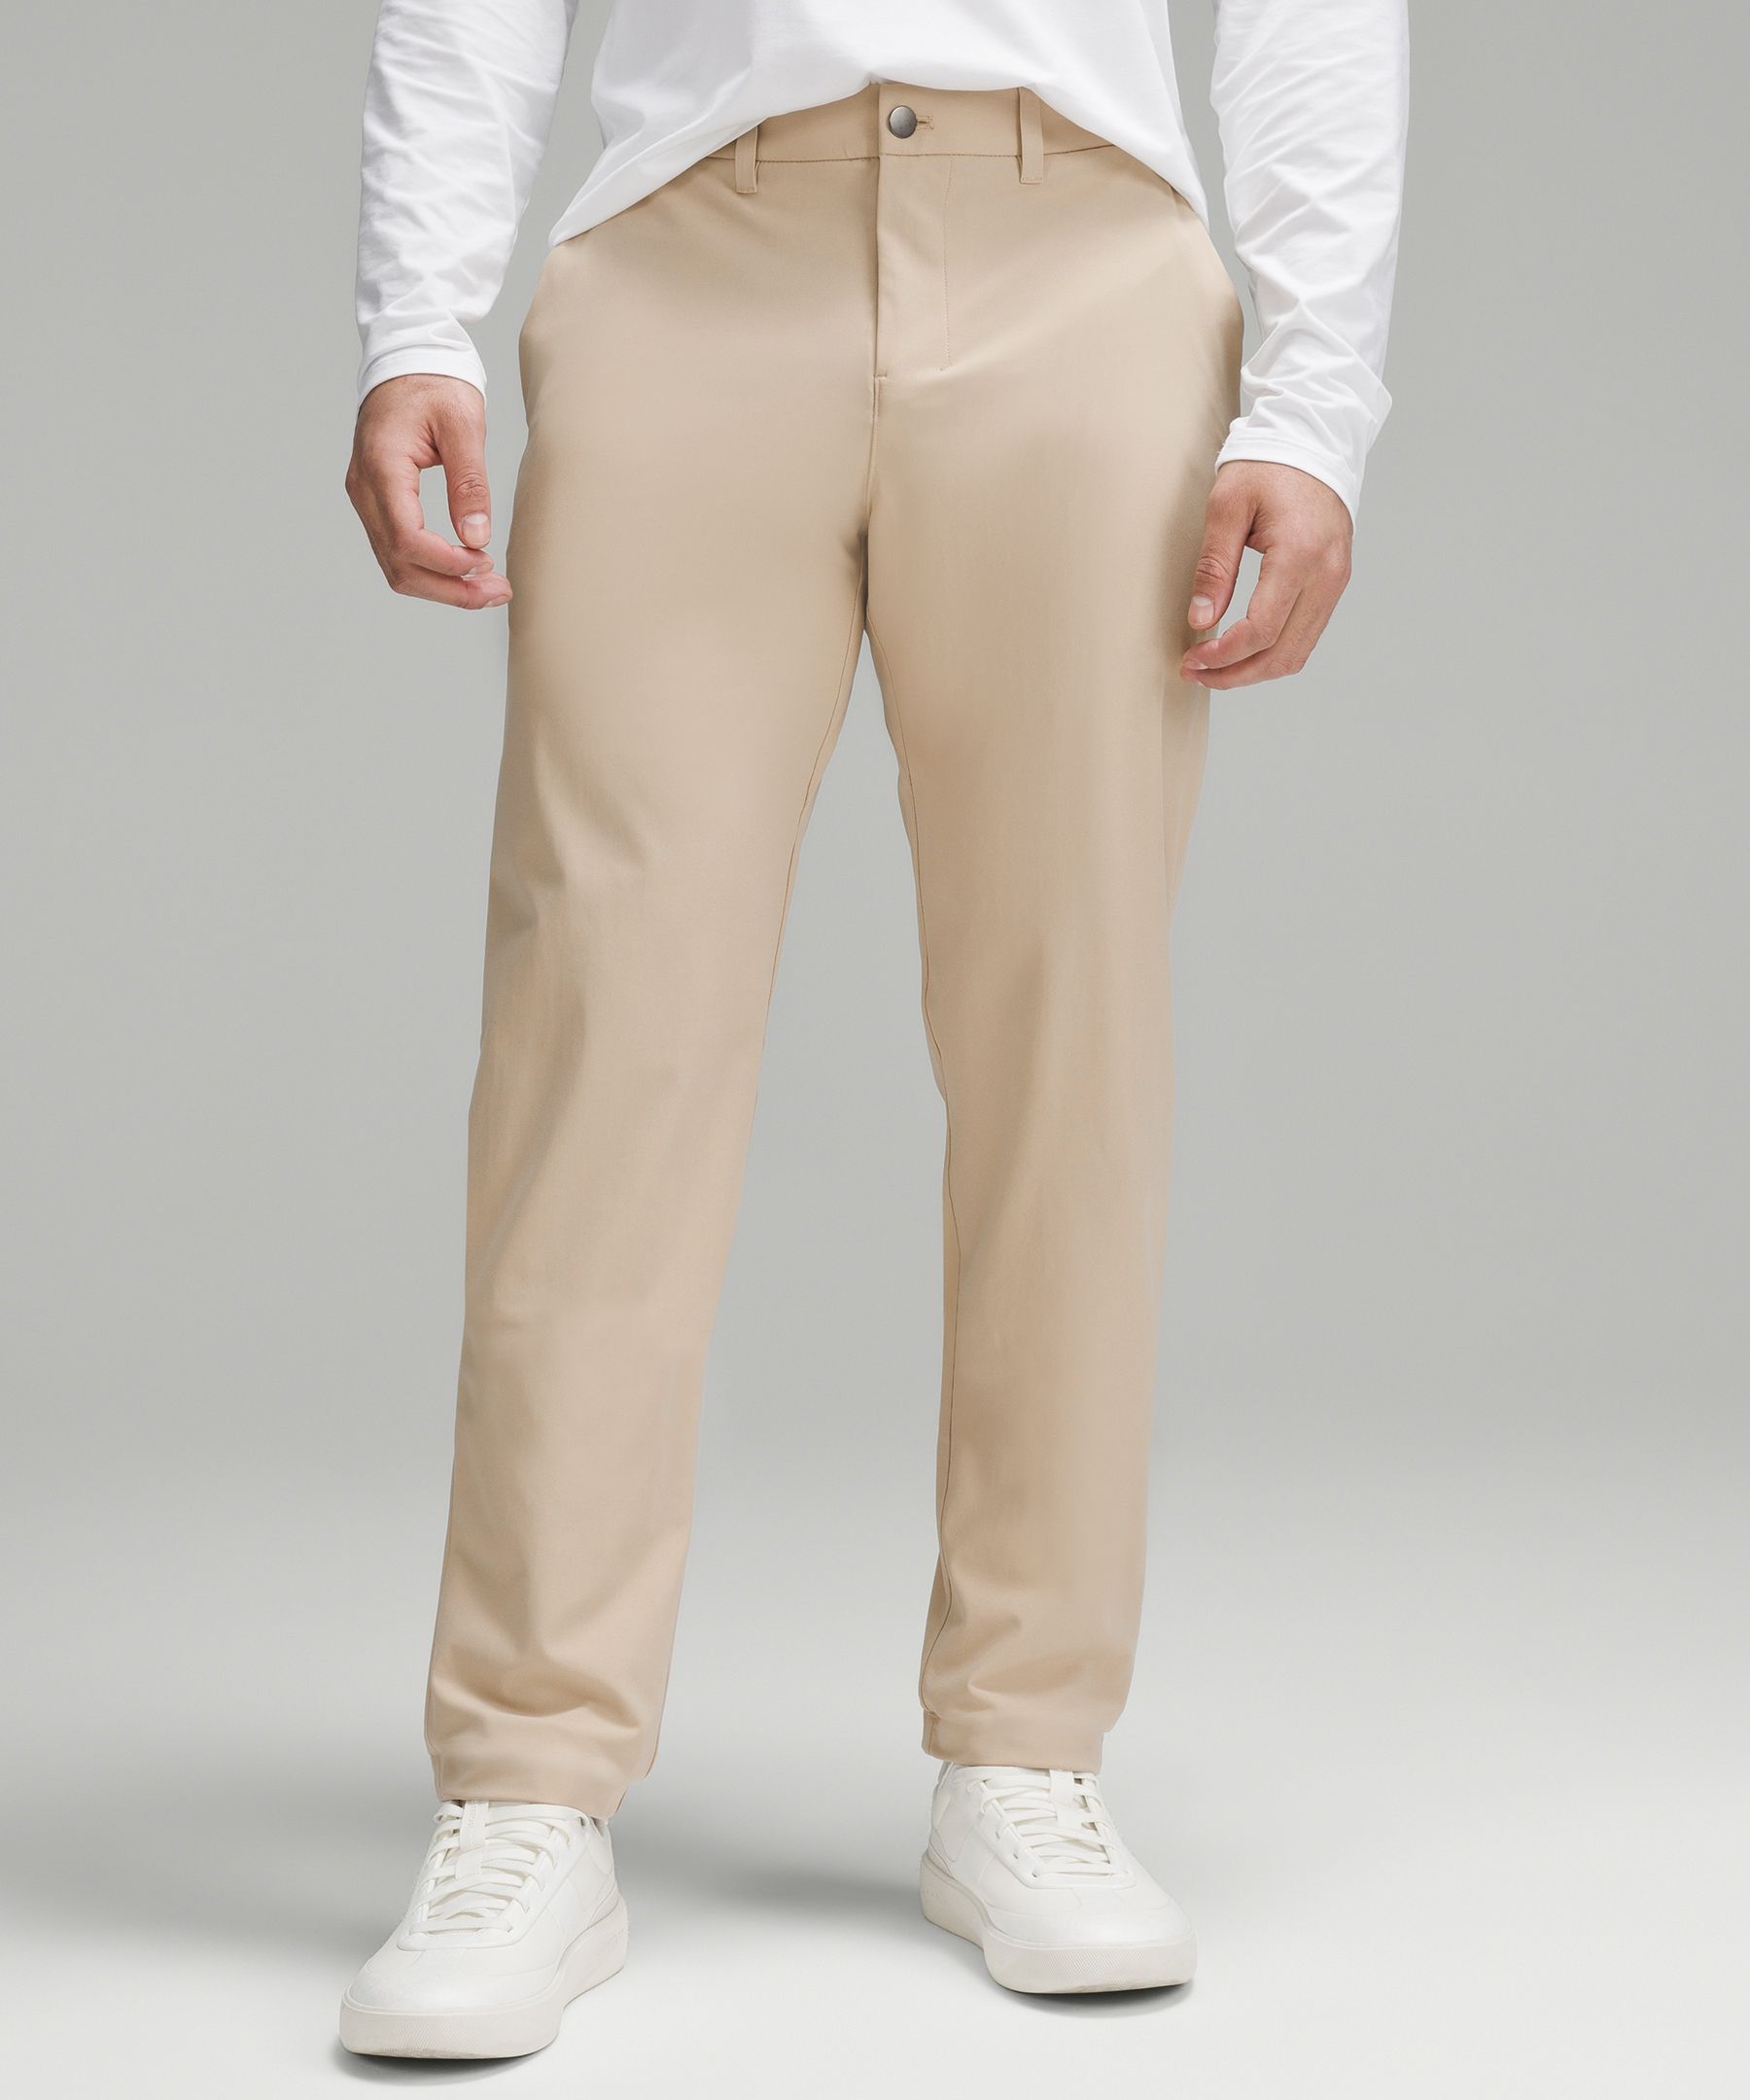 Lululemon ABC Classic-Fit Trouser 32